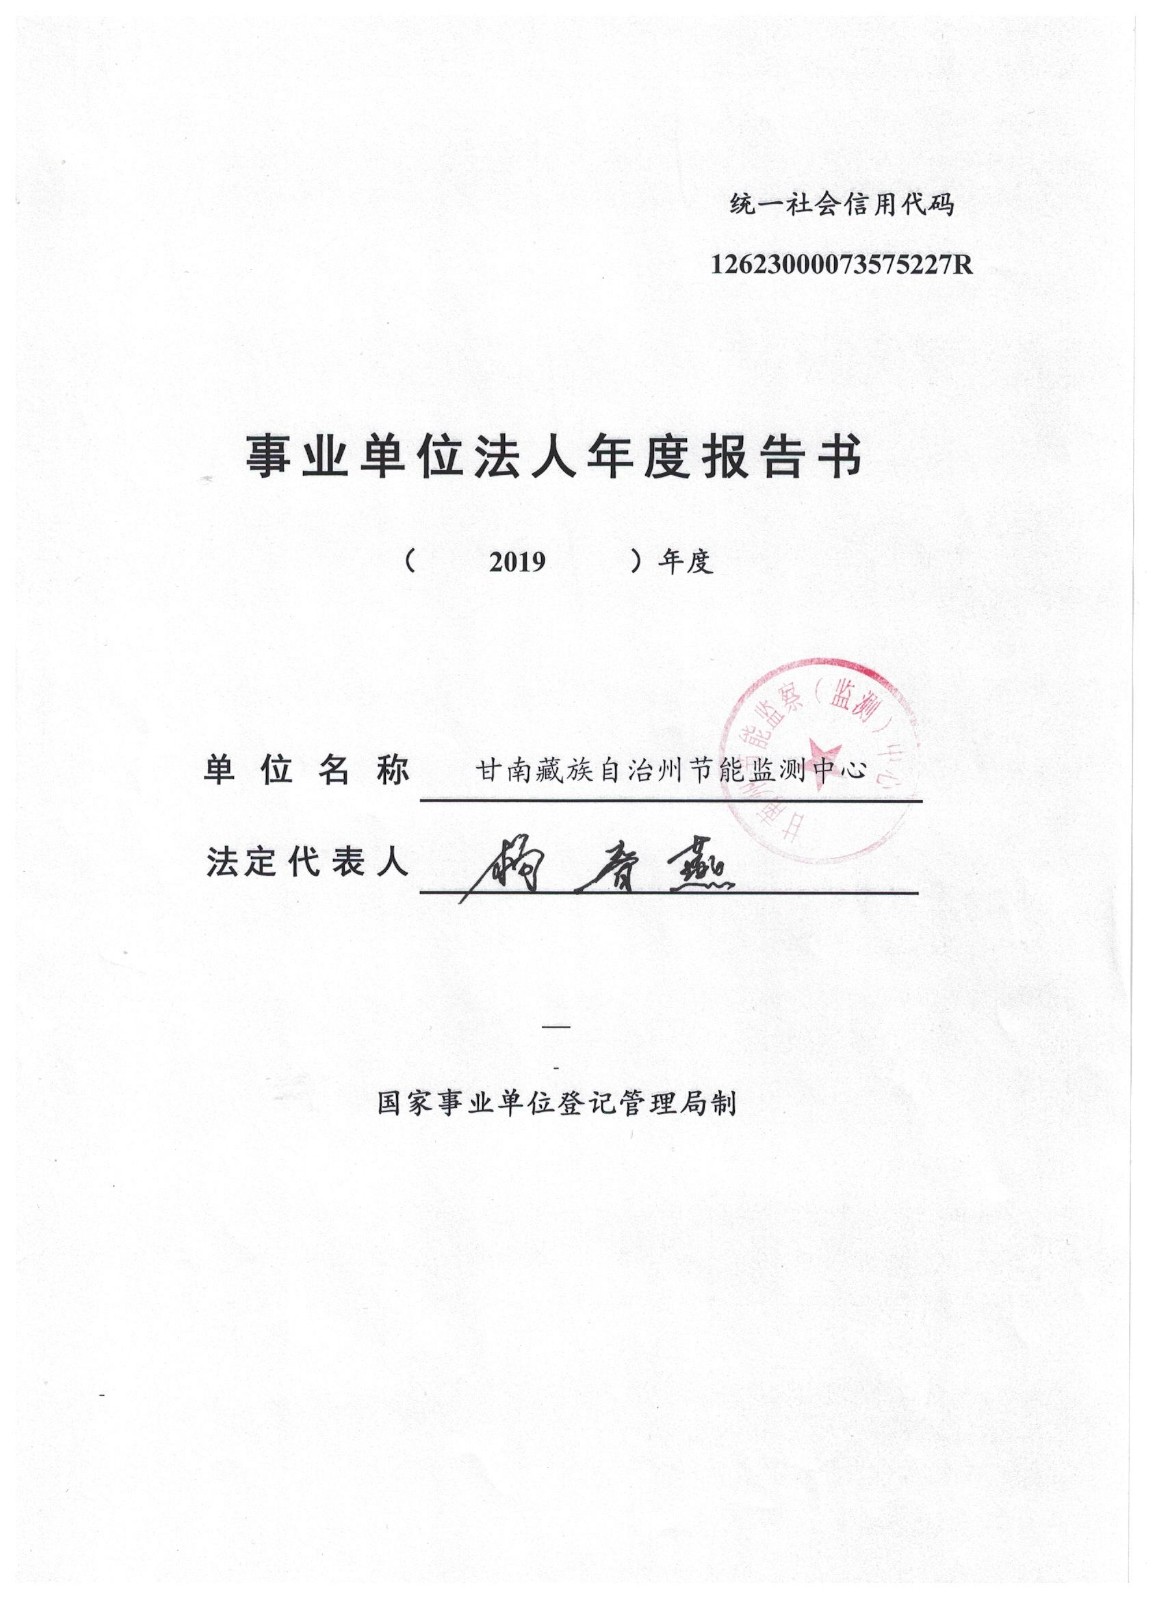 关于甘南藏族自治州节能监测中心事业单位法人2019年度报告工作的公示